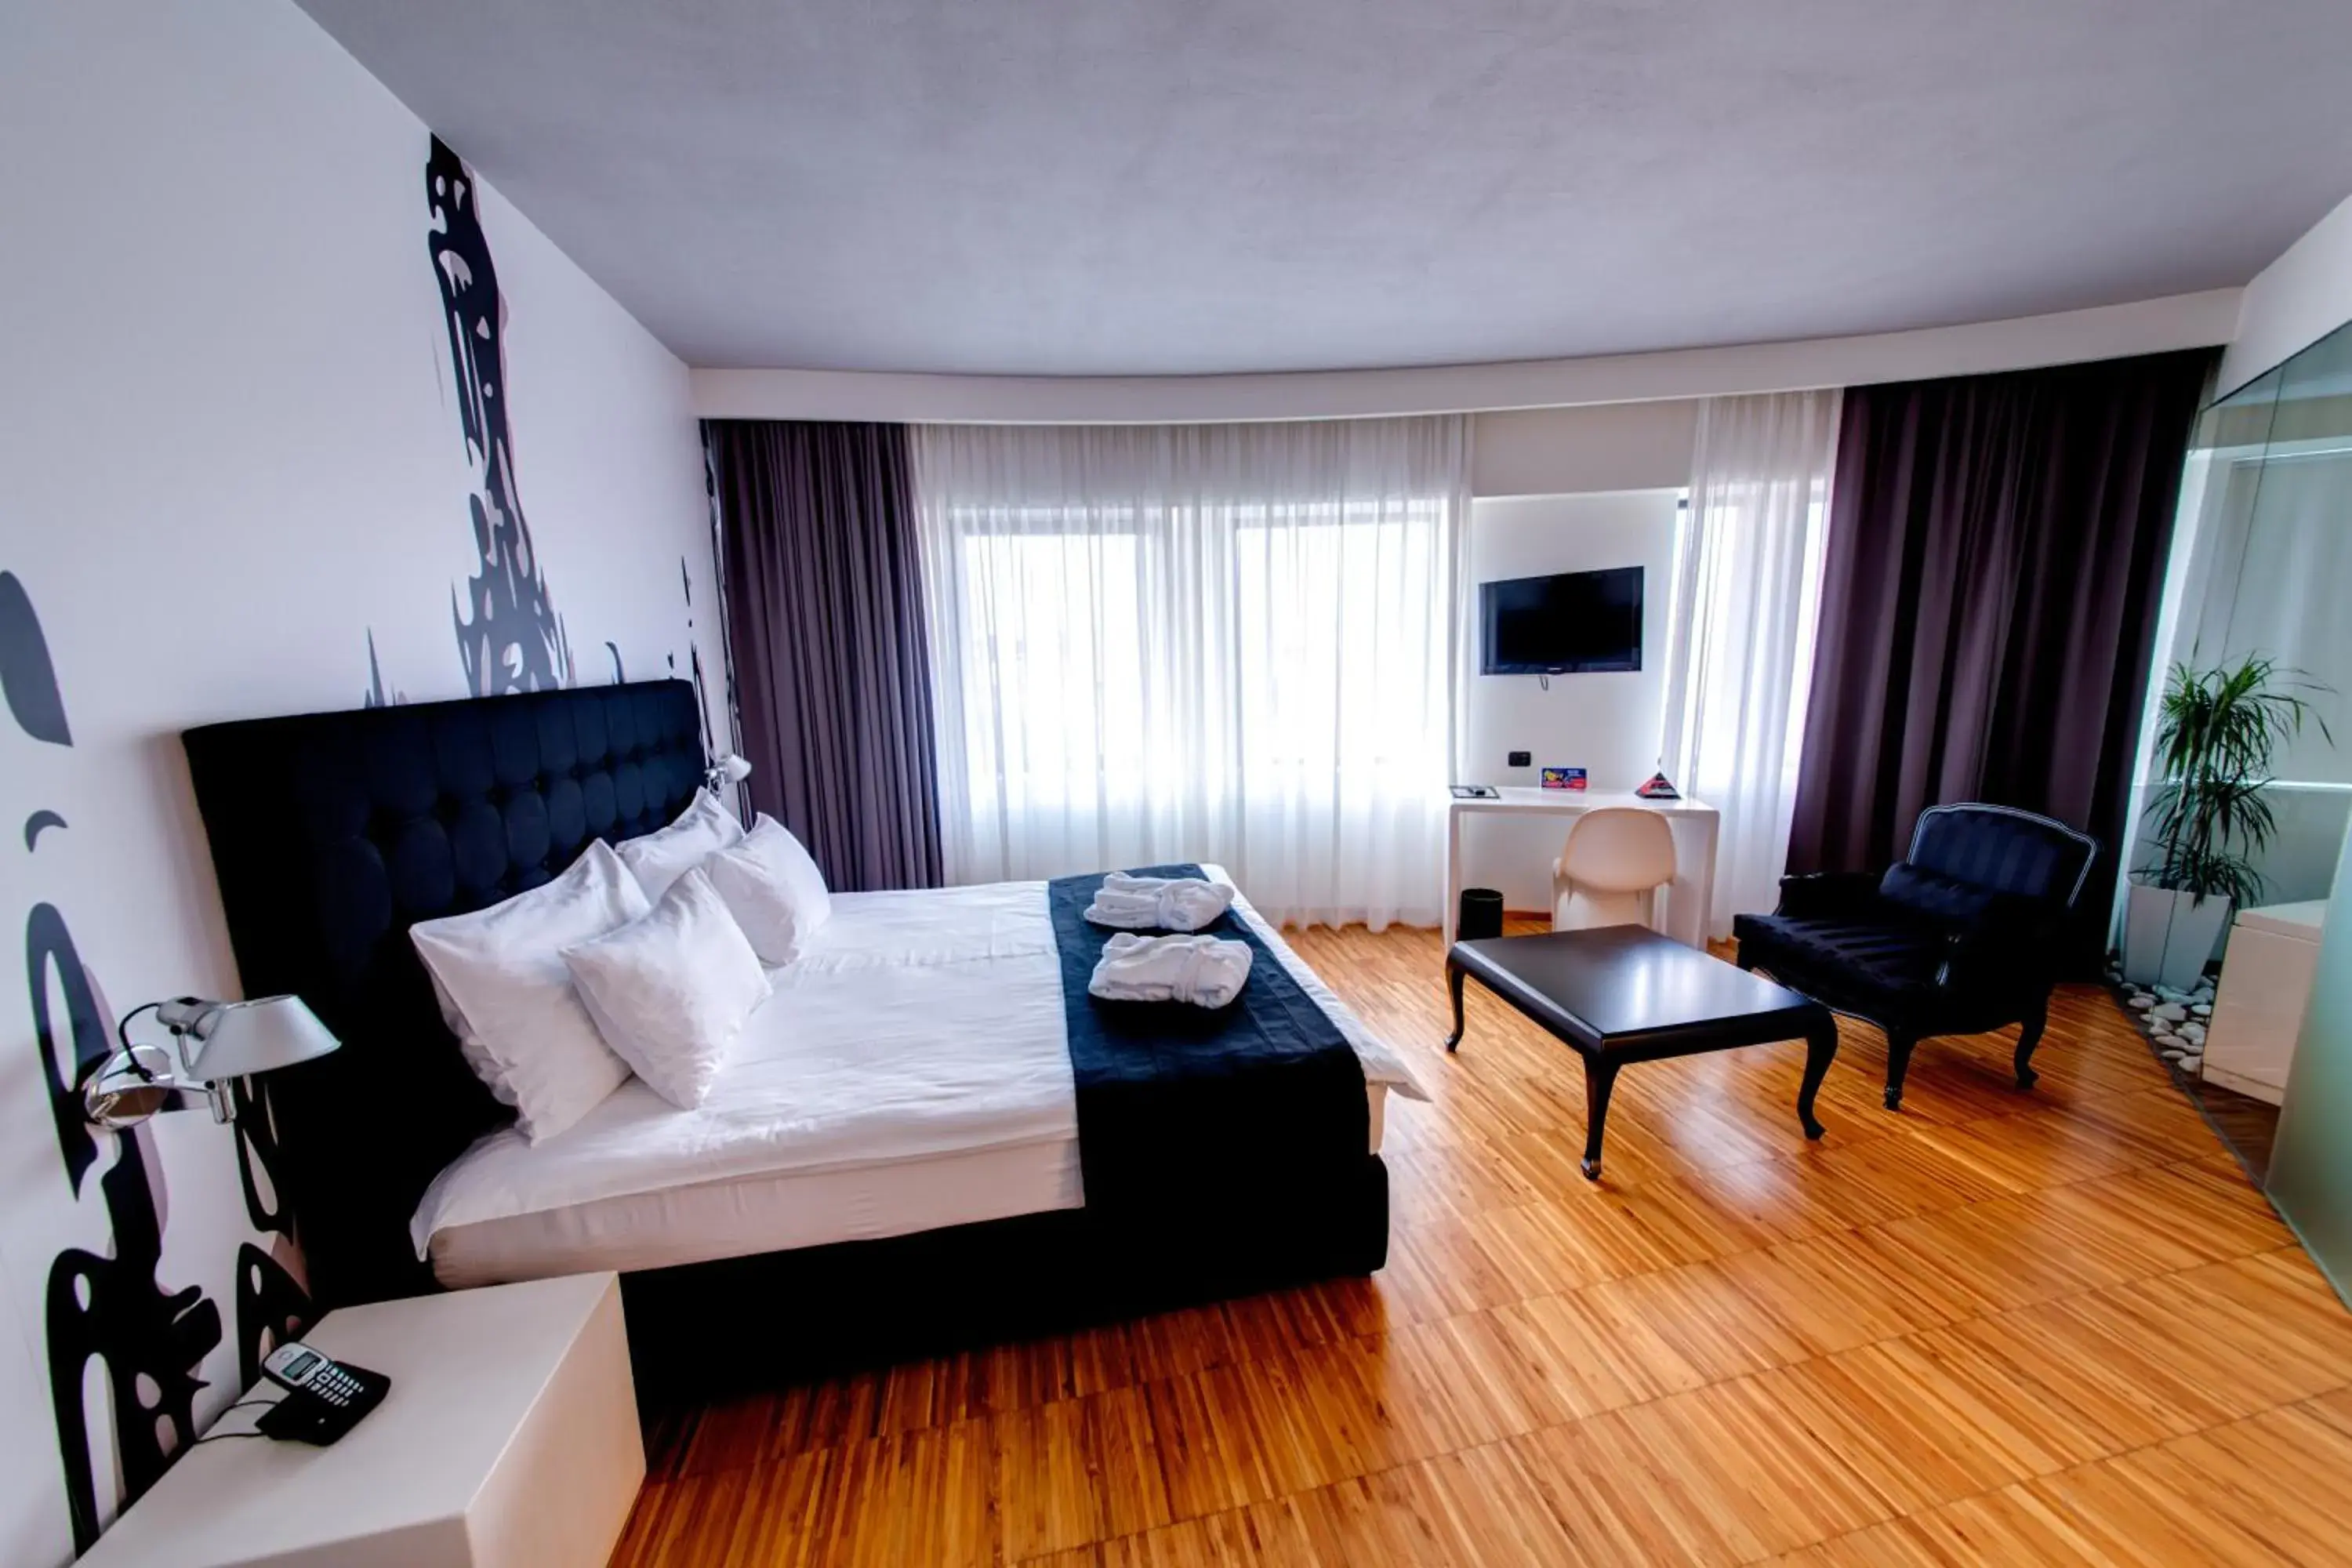 Photo of the whole room in Sarroglia Hotel